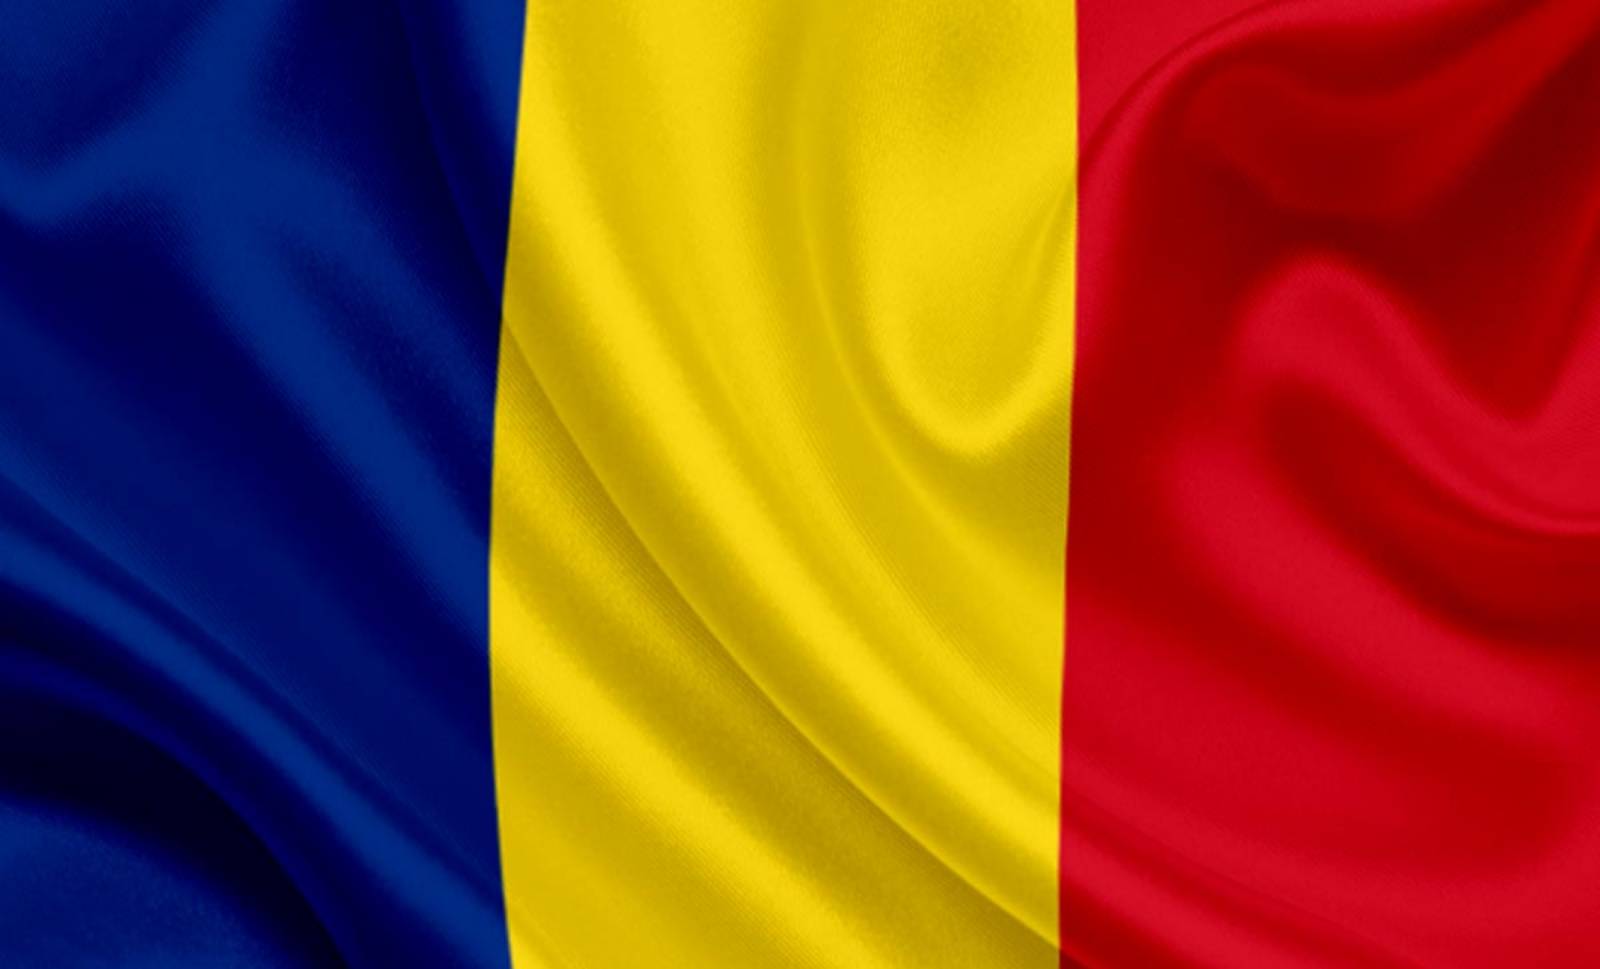 Den rumænske regering styrer Rumænien